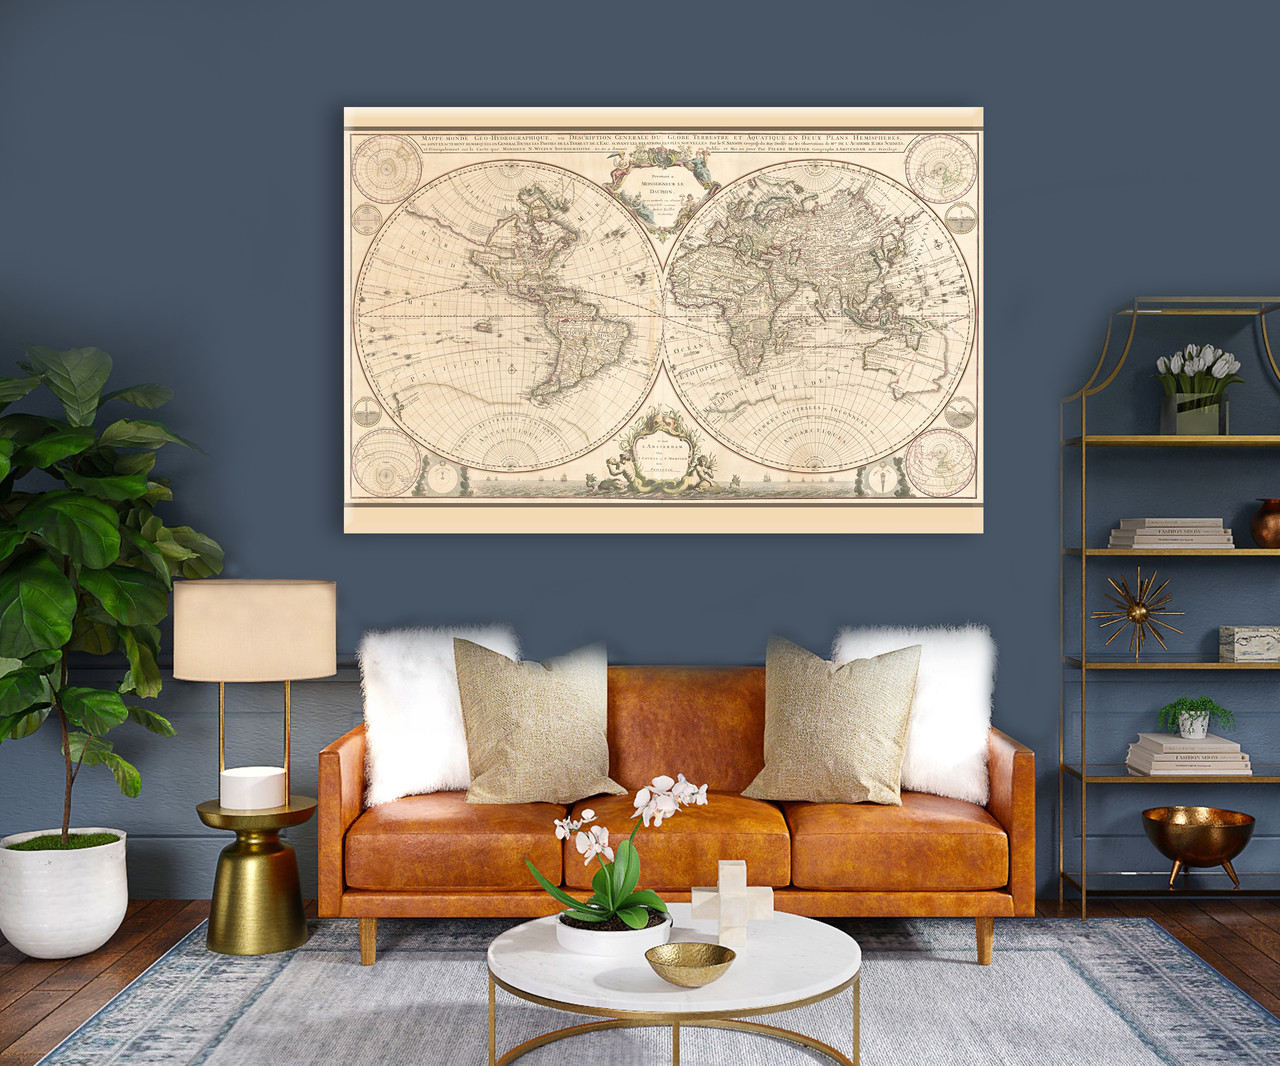 Оригінальна картина в офісі старовинні карти світу. Стильний подарунок директору, колезі.